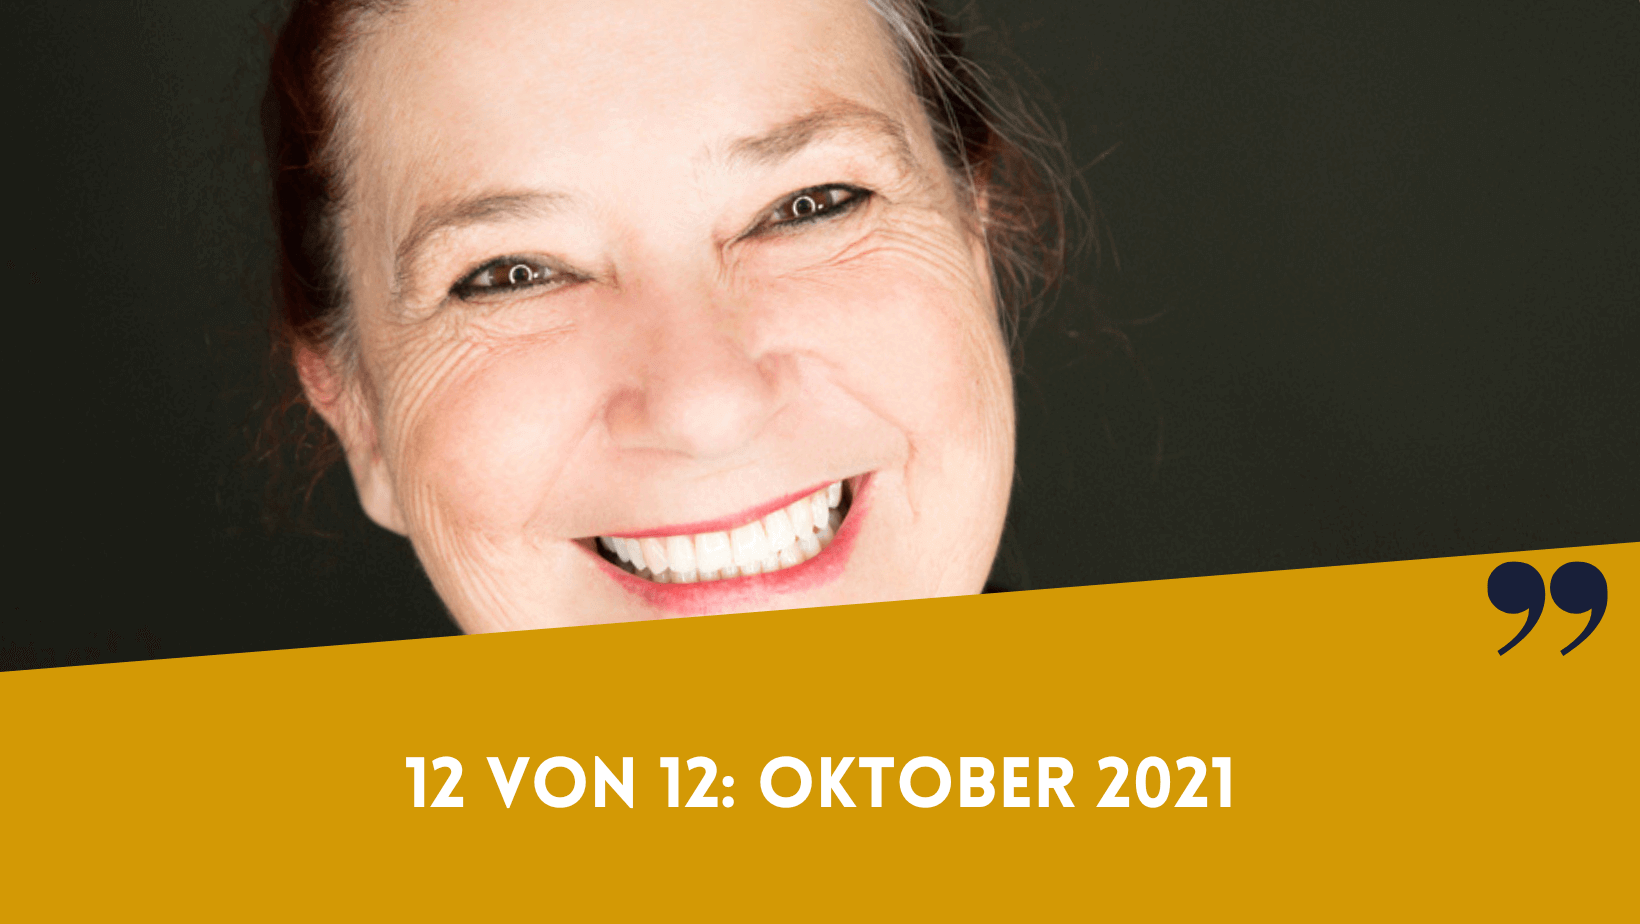 12 von 12 Oktober 2021 von Barbara-Mira Jakob